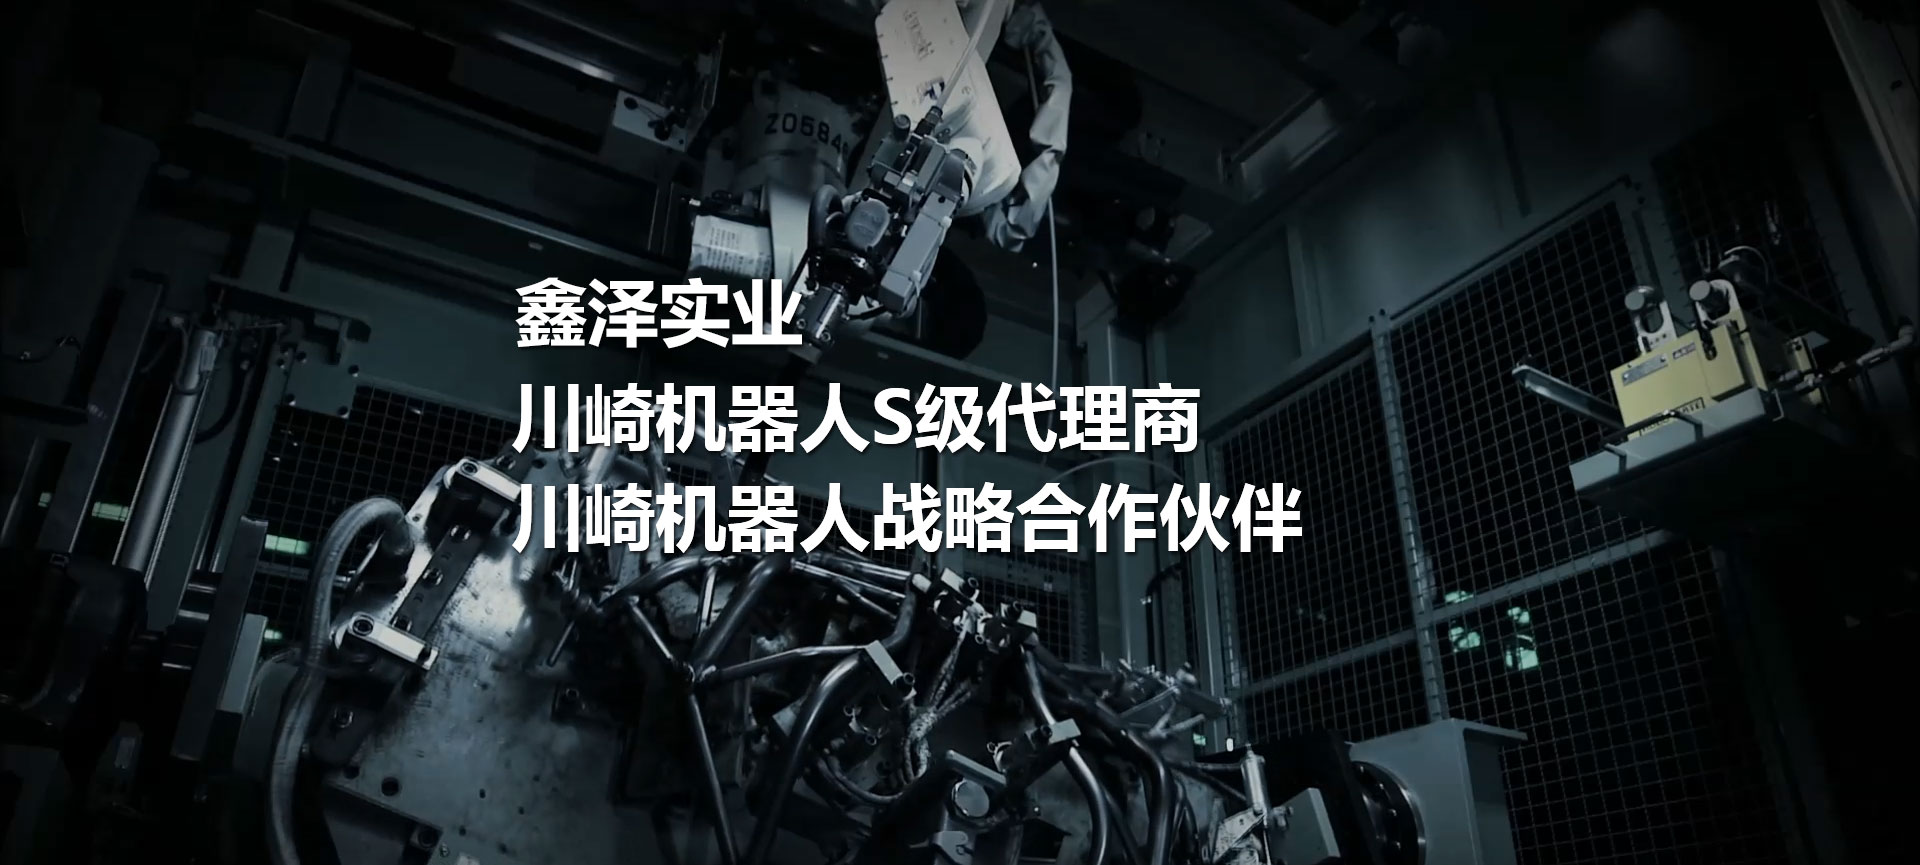 川崎機器人、噴涂機器人、焊接機器人、碼垛機器人、工業機器人、搬運機器人